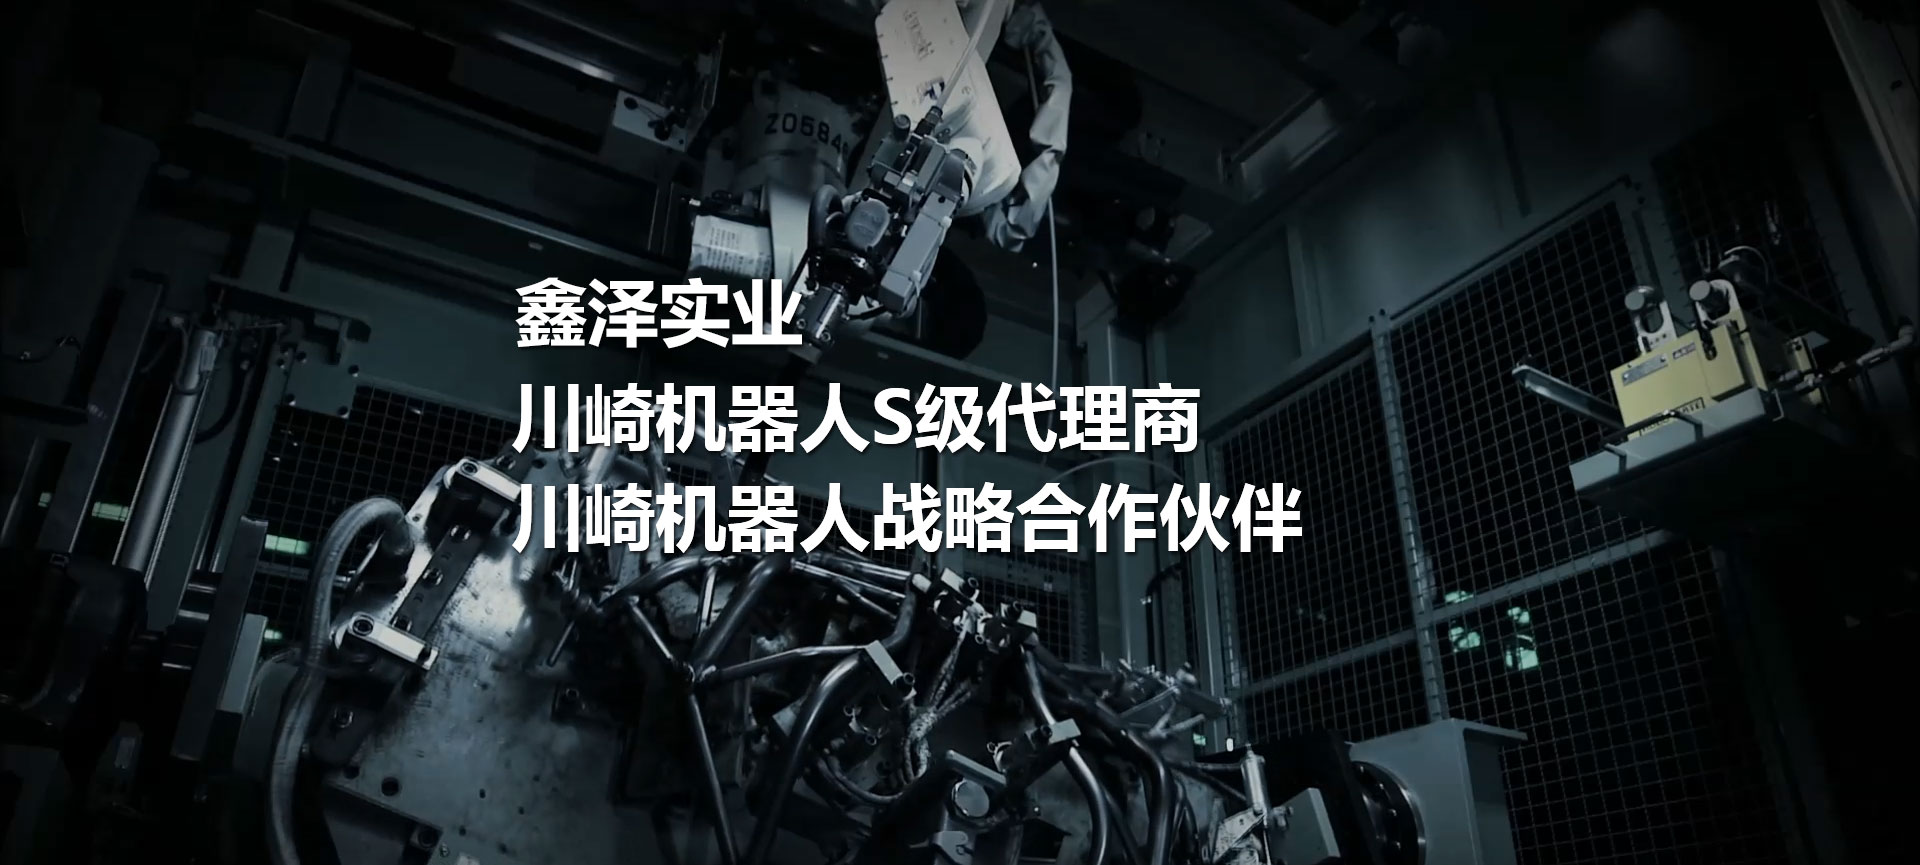 川崎機器人、噴涂機器人、焊接機器人、碼垛機器人、工業機器人、搬運機器人